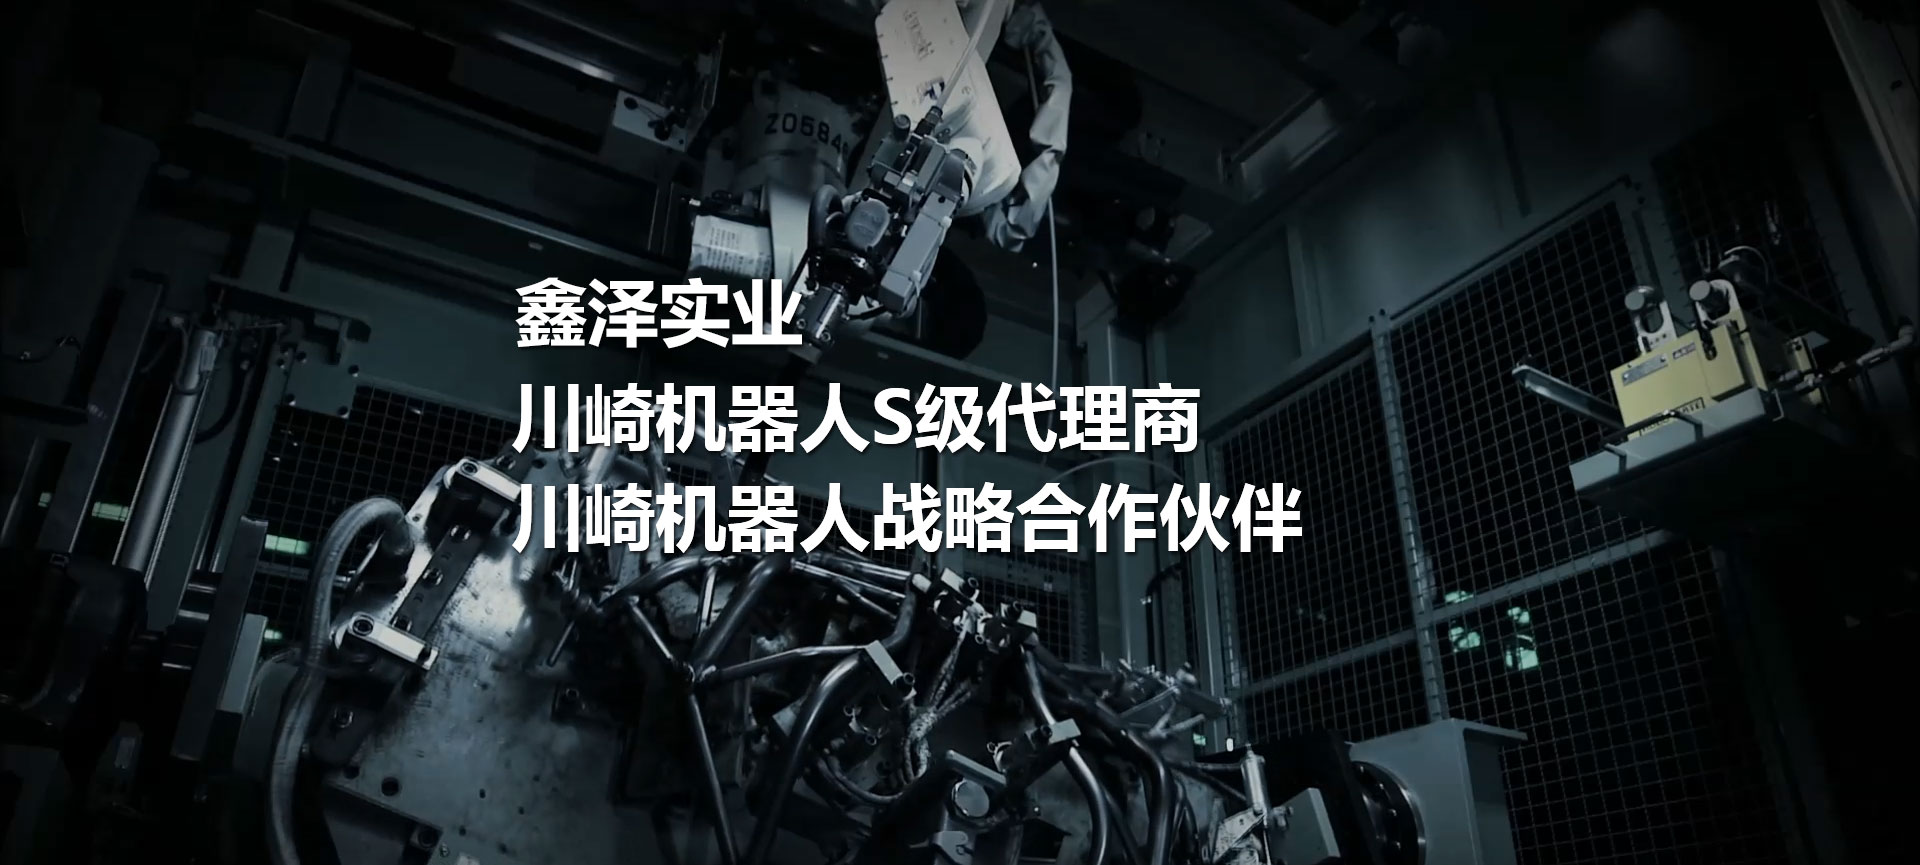 川崎機器人、噴涂機器人、焊接機器人、碼垛機器人、工業機器人、搬運機器人